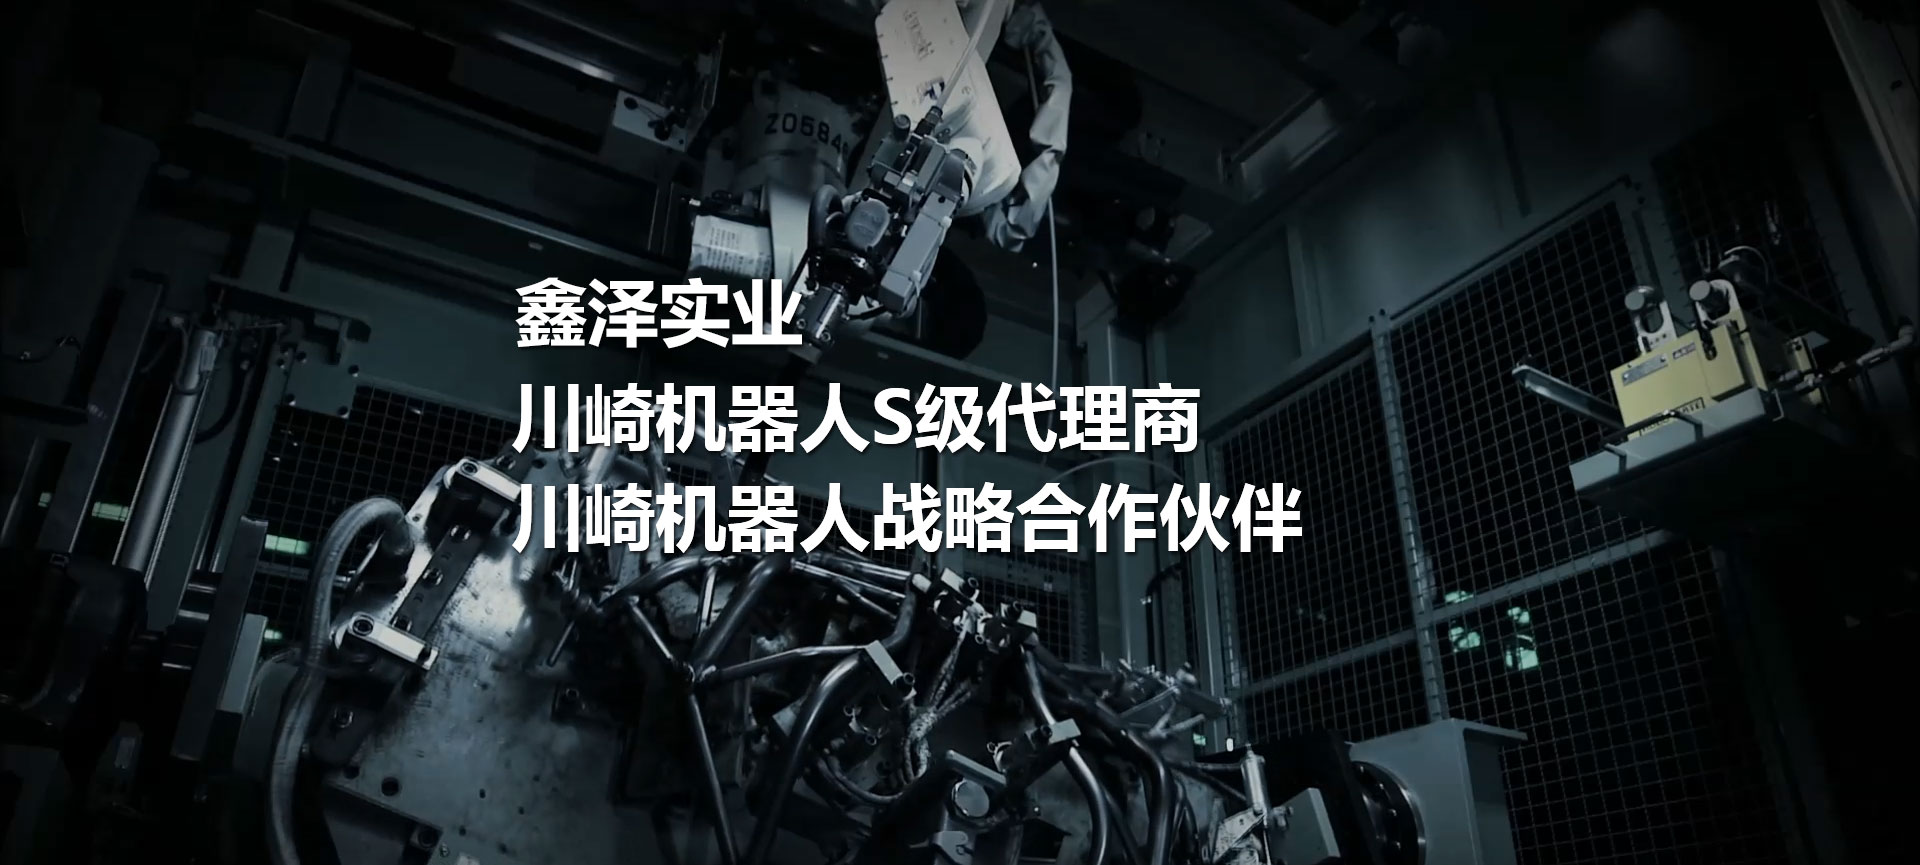 川崎機器人、噴涂機器人、焊接機器人、碼垛機器人、工業機器人、搬運機器人